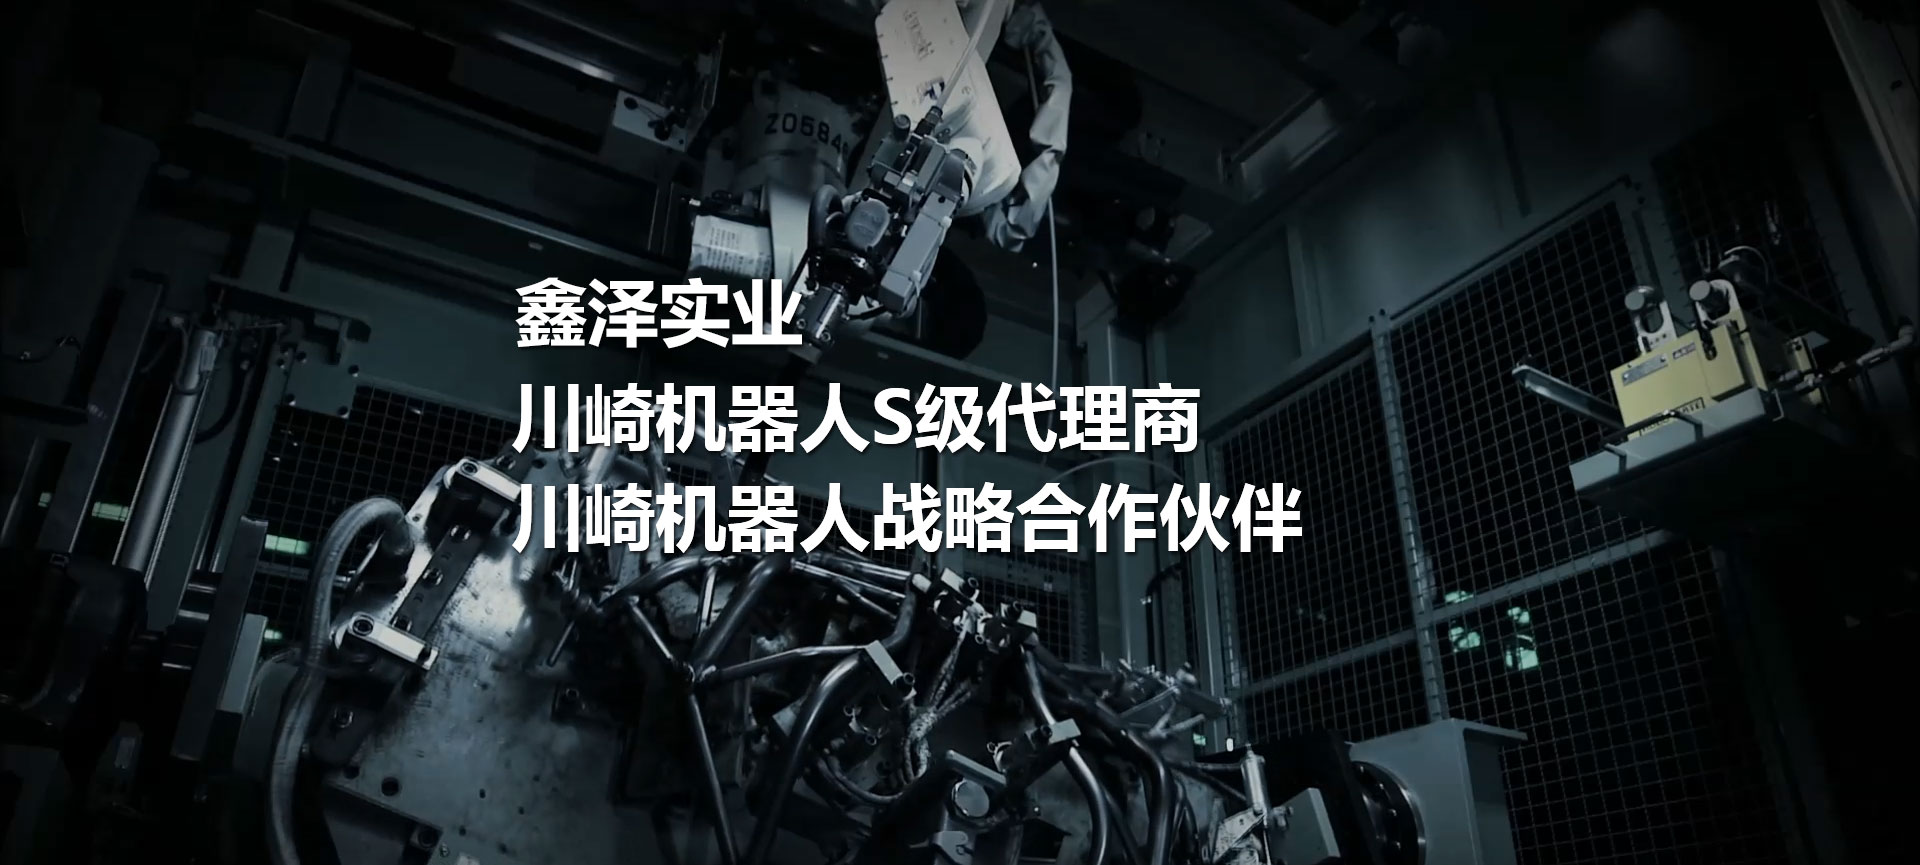 川崎機器人、噴涂機器人、焊接機器人、碼垛機器人、工業機器人、搬運機器人